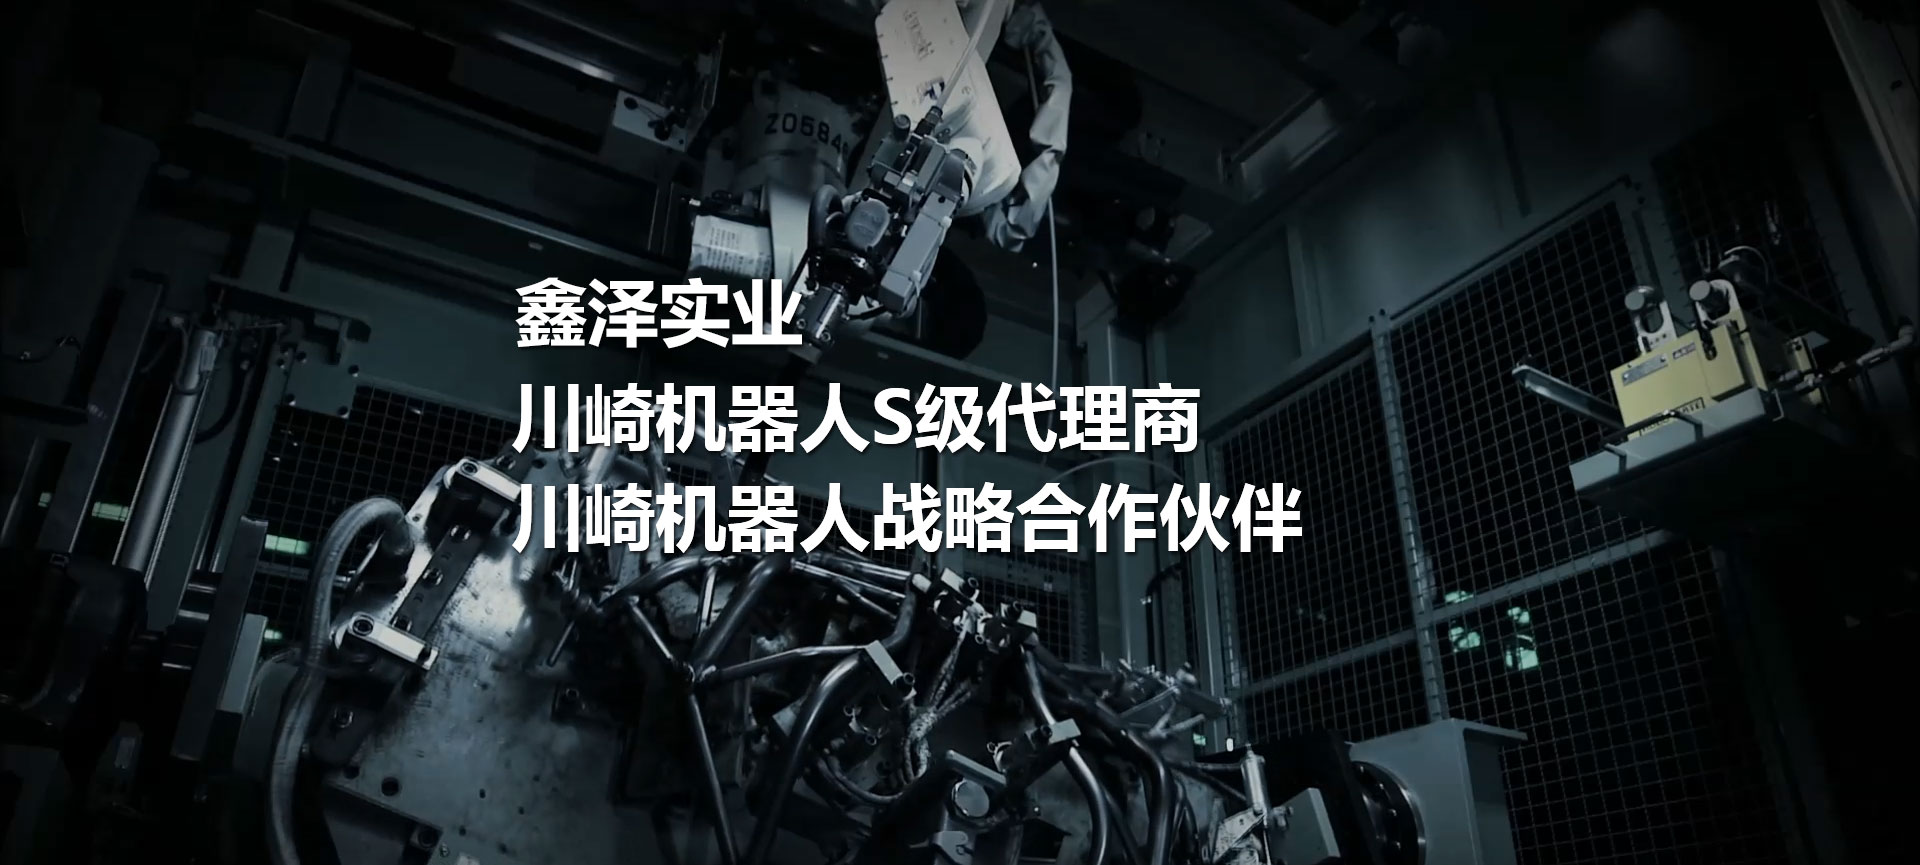 川崎機器人、噴涂機器人、焊接機器人、碼垛機器人、工業機器人、搬運機器人